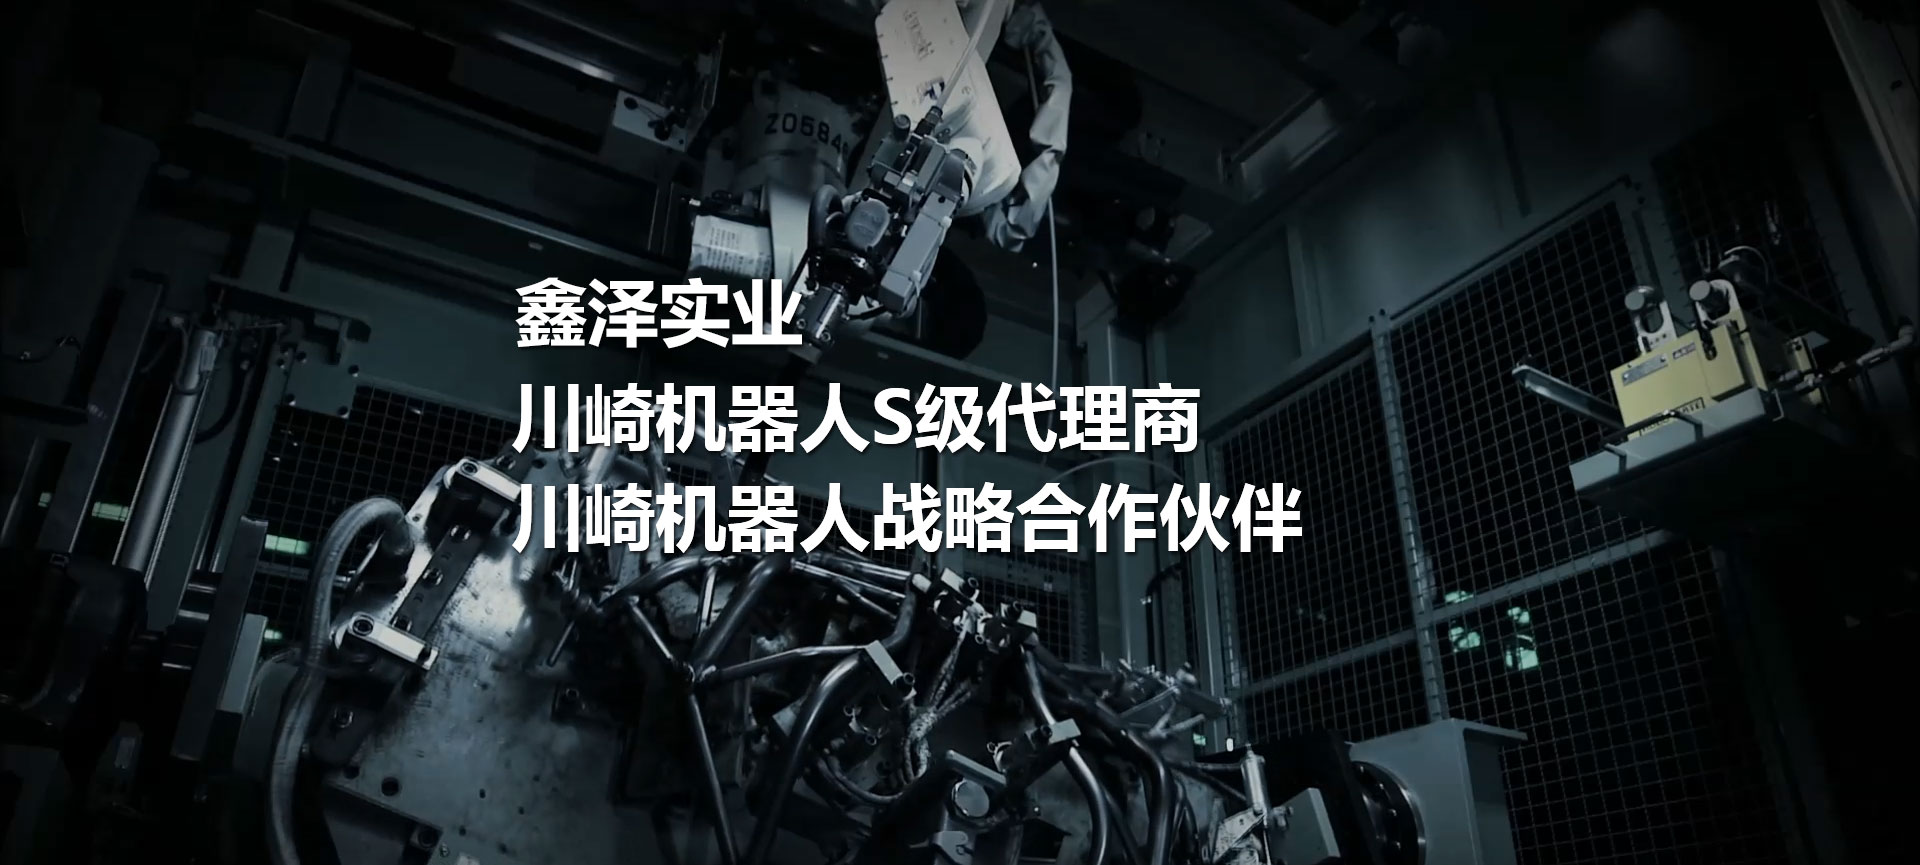 川崎機器人、噴涂機器人、焊接機器人、碼垛機器人、工業機器人、搬運機器人